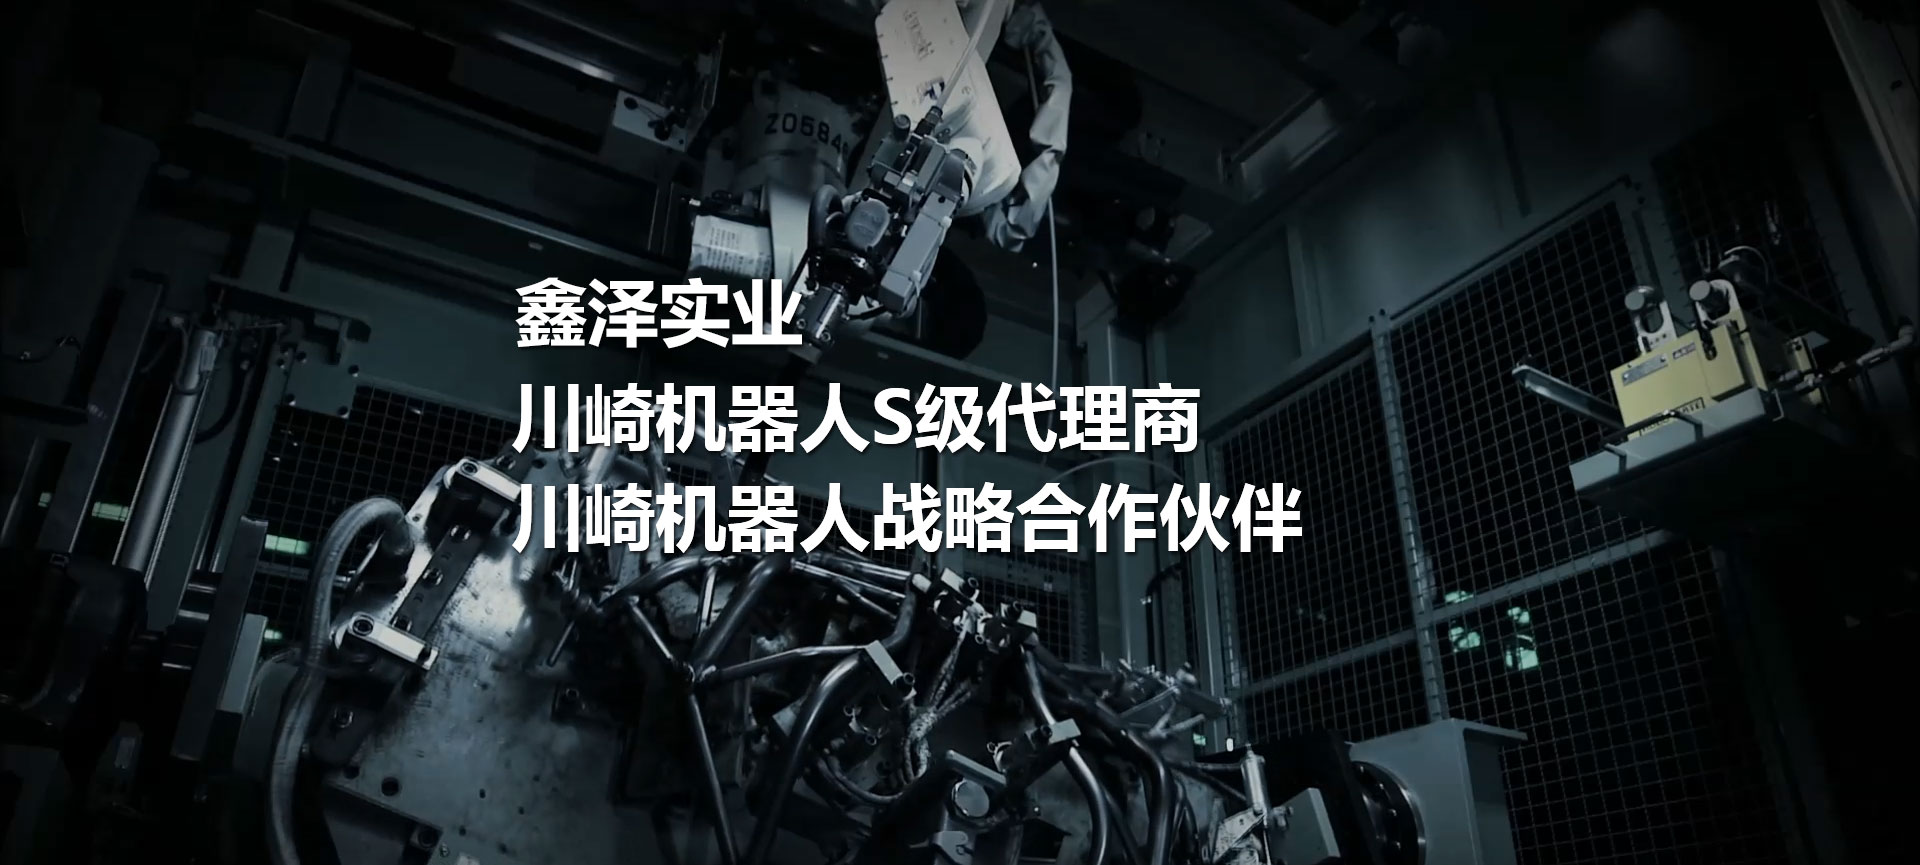 川崎機器人、噴涂機器人、焊接機器人、碼垛機器人、工業機器人、搬運機器人